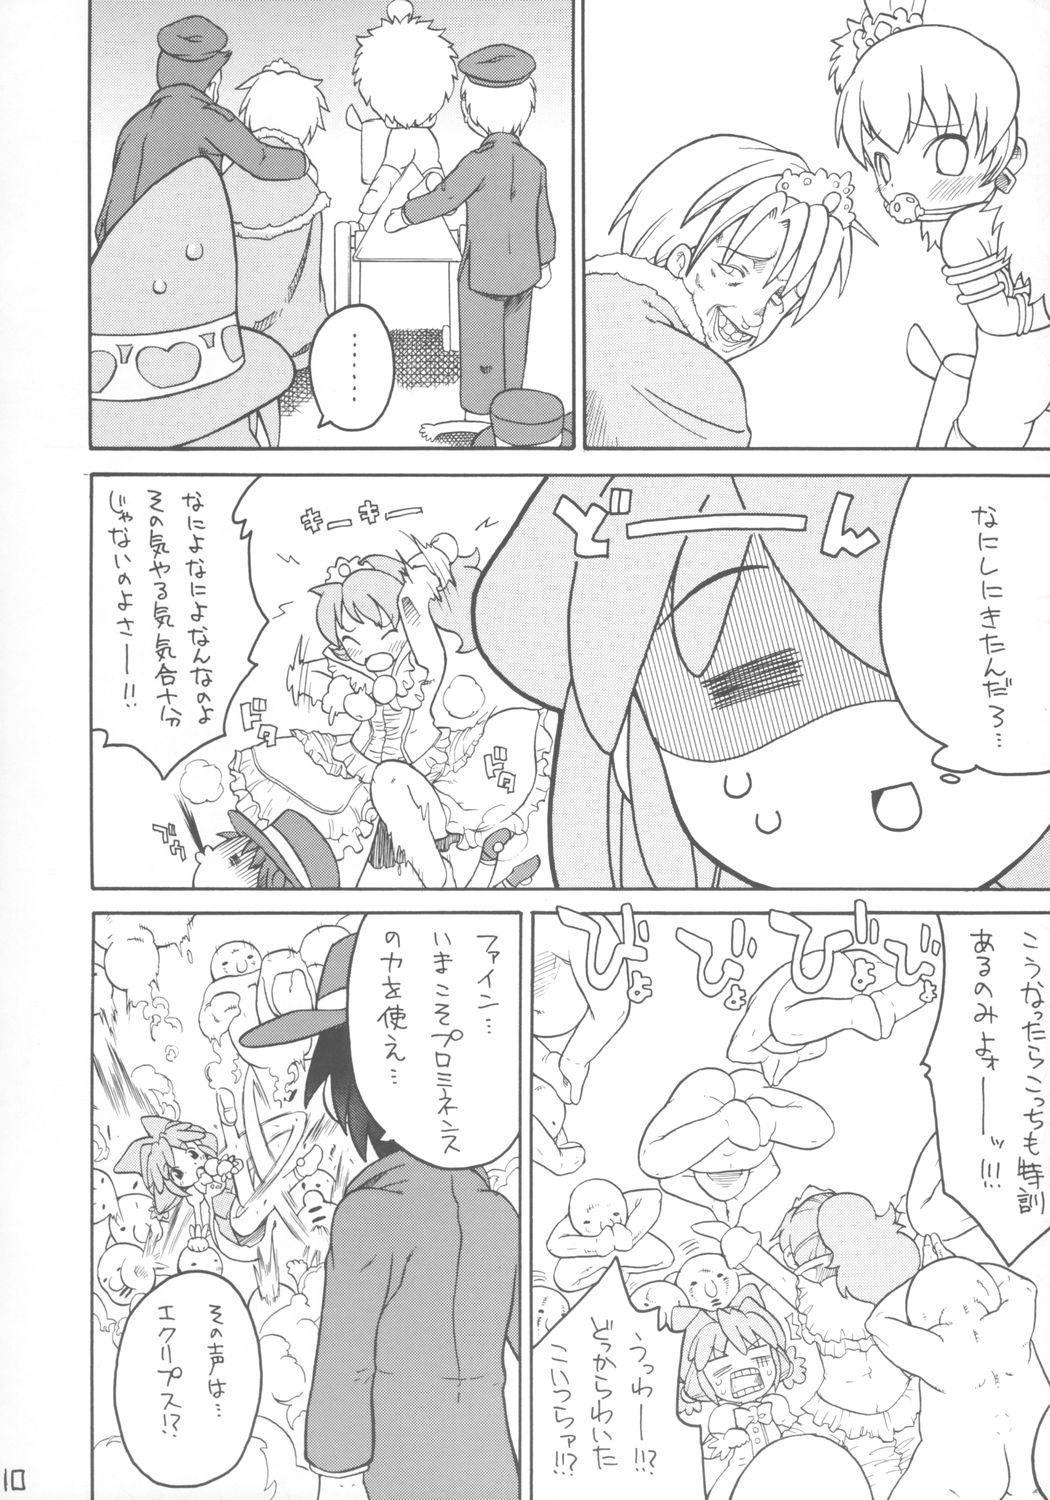 Boobs Kodomo ja Neenda Princess nanda! - Fushigiboshi no futagohime Big Dick - Page 9